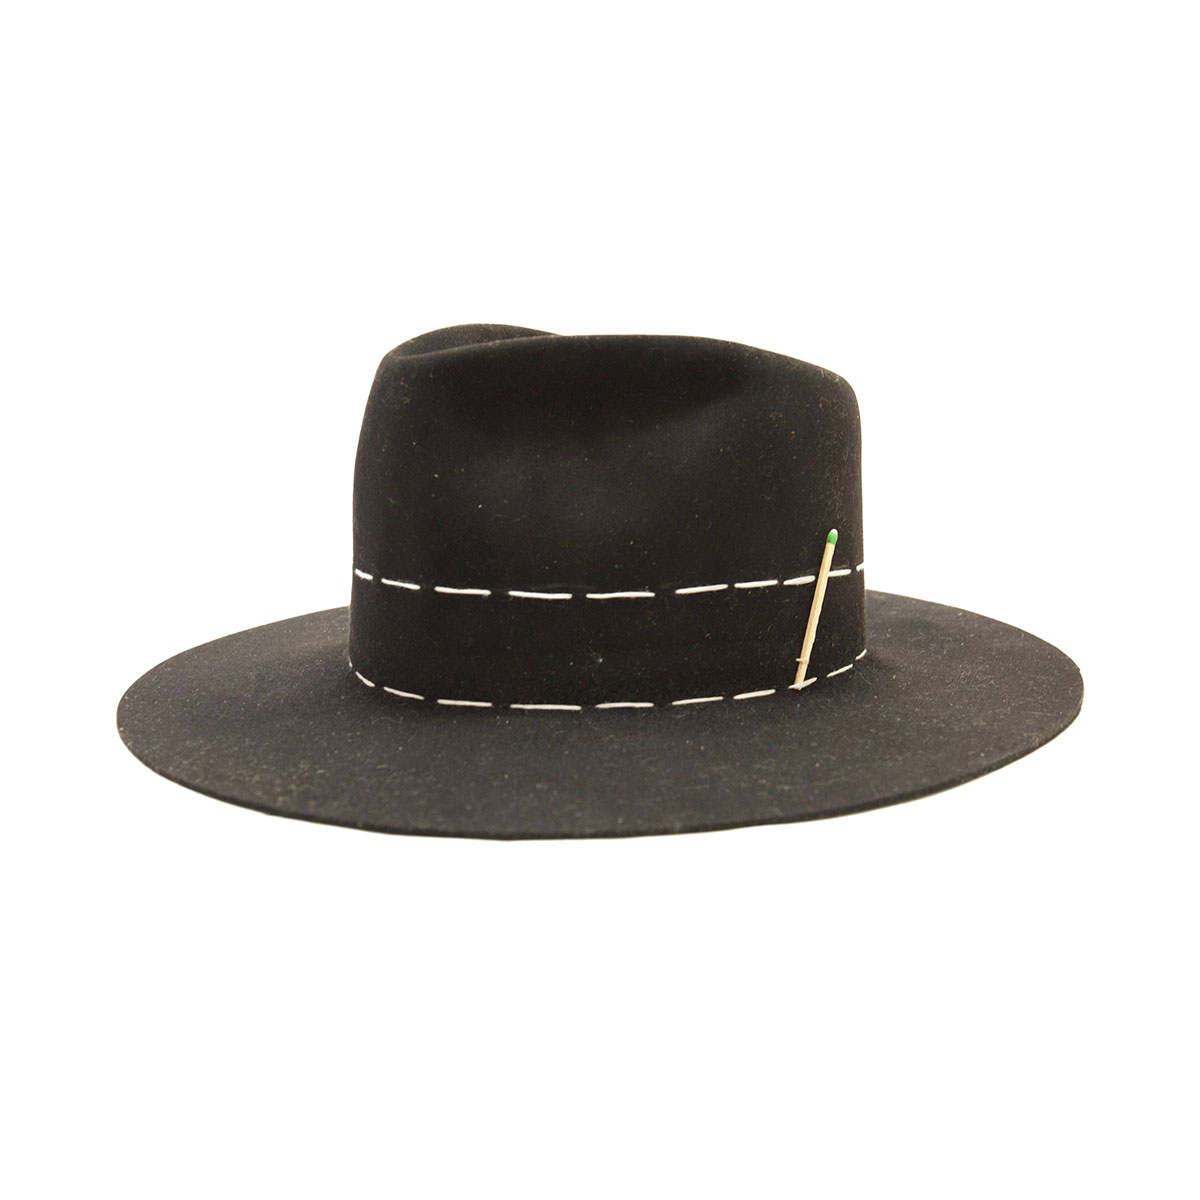 Sensi Studio - Texas Long Brim Panama Hat - S